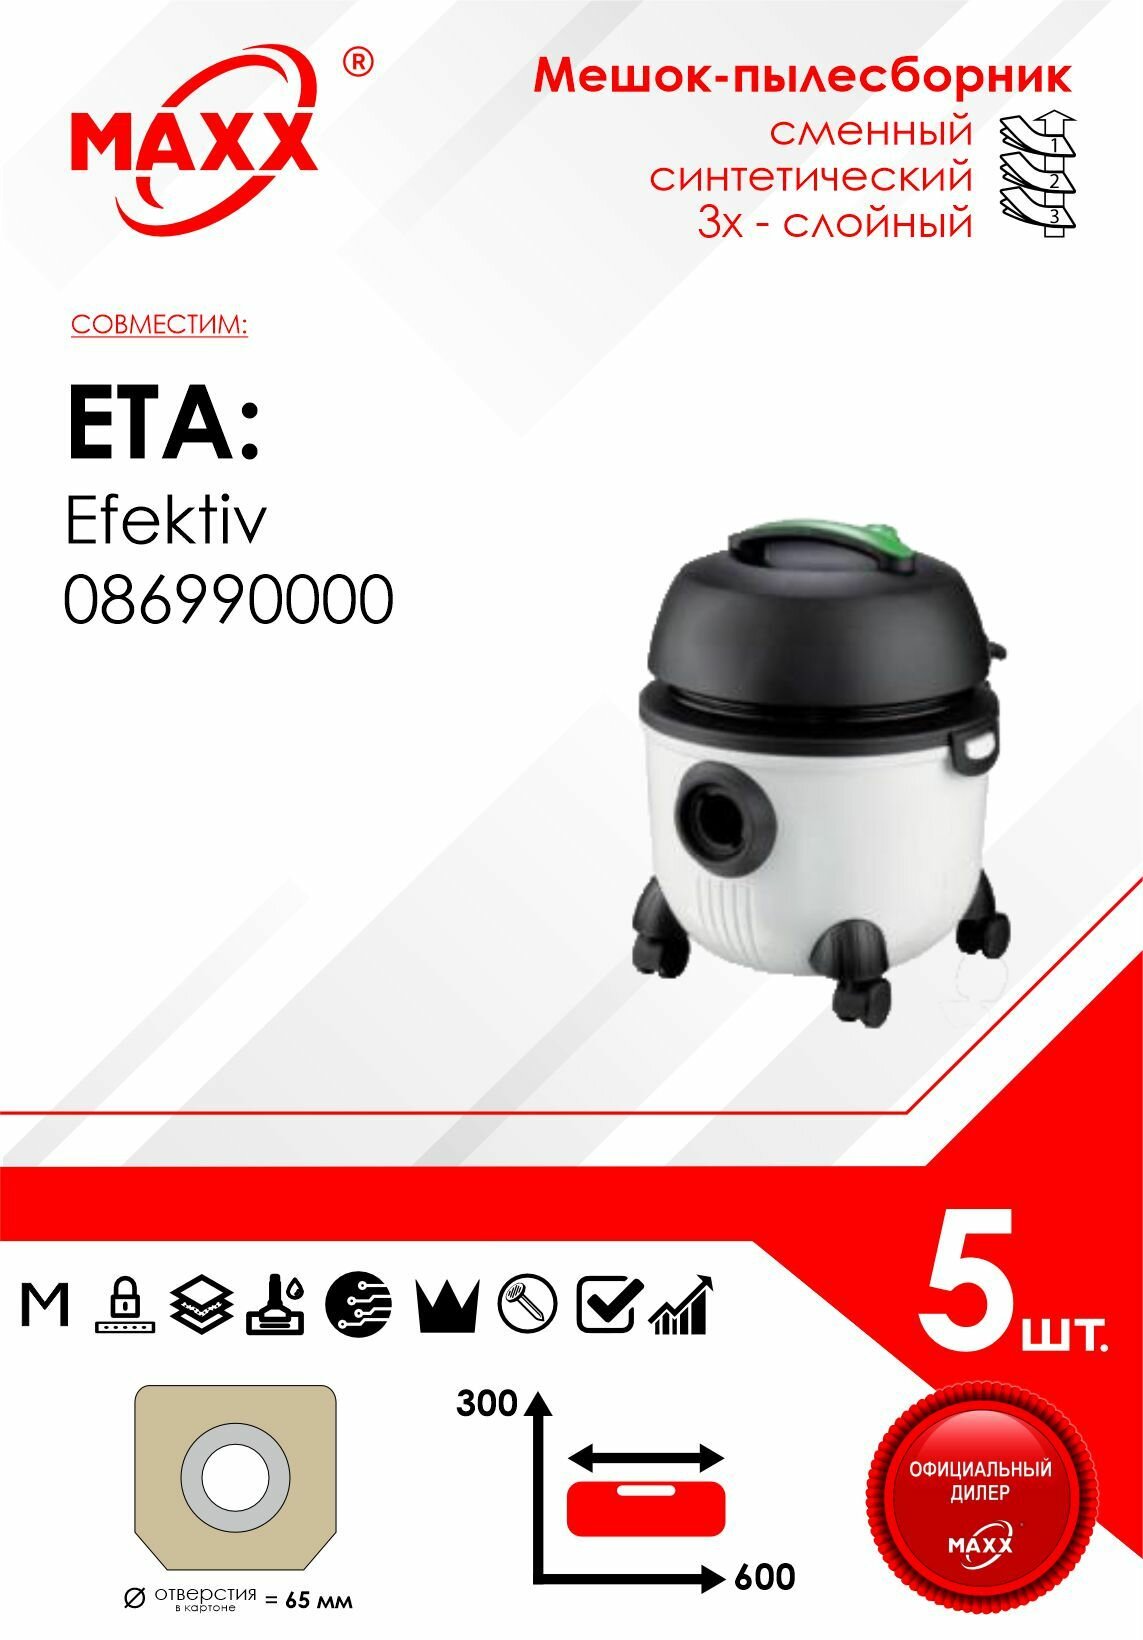 Мешок - пылесборник 5 шт. для пылесоса ETA Efektiv 086990000